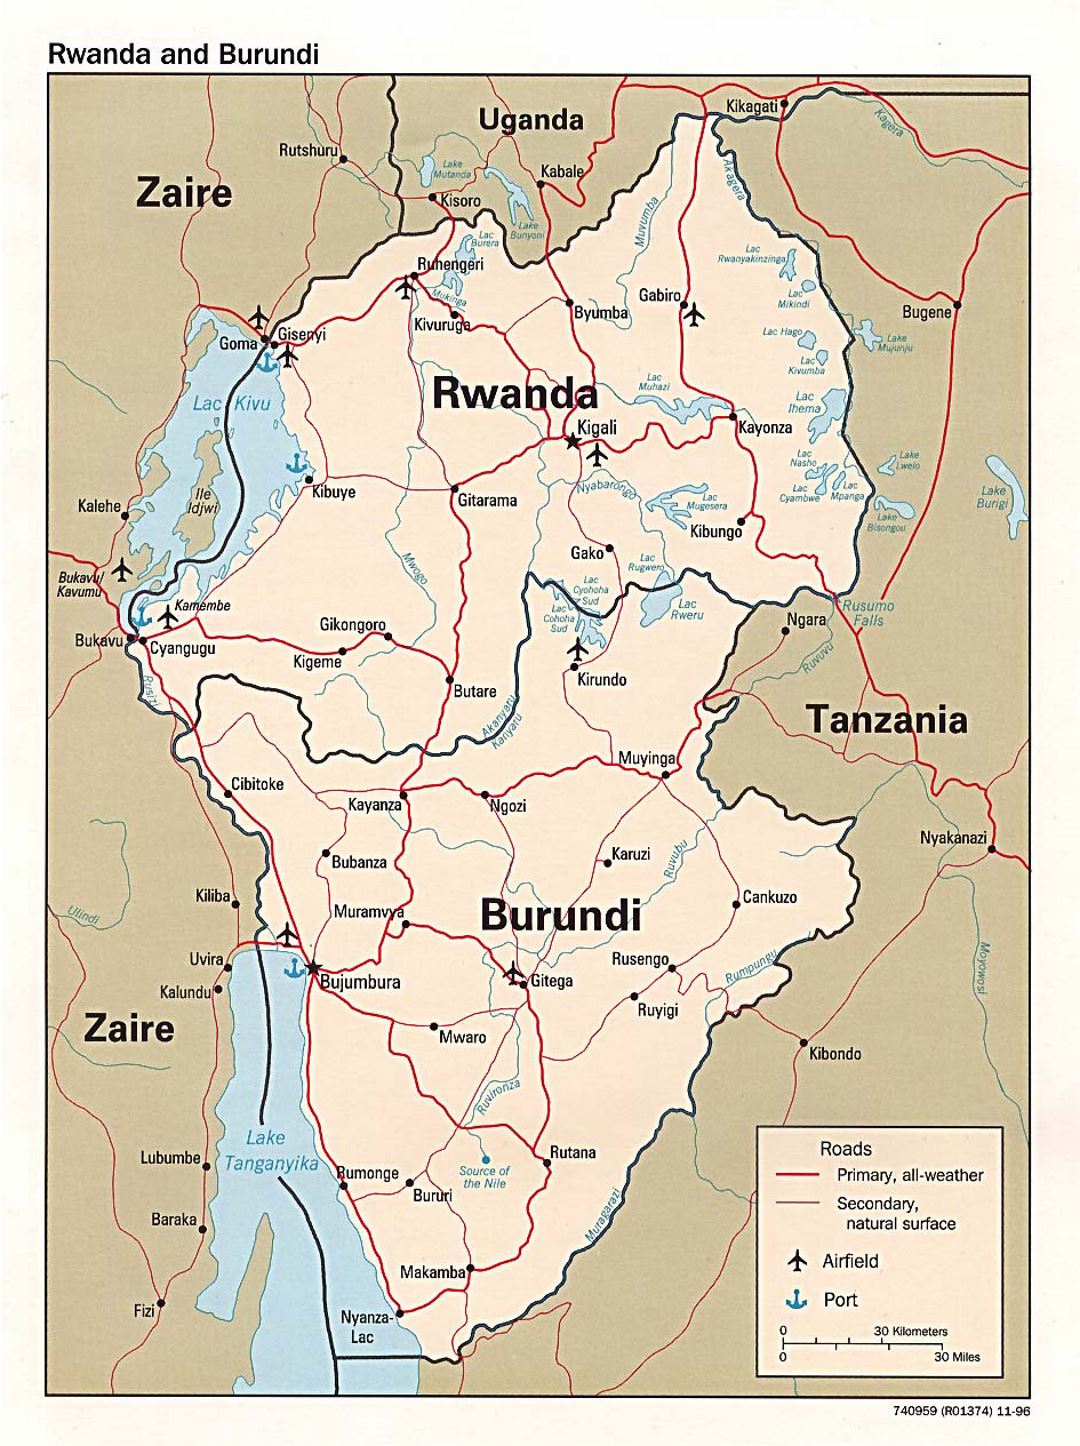 Детальная политическая карта Руанды и Бурунди с дорогами, крупными городами, портами и аэропортами - 1996